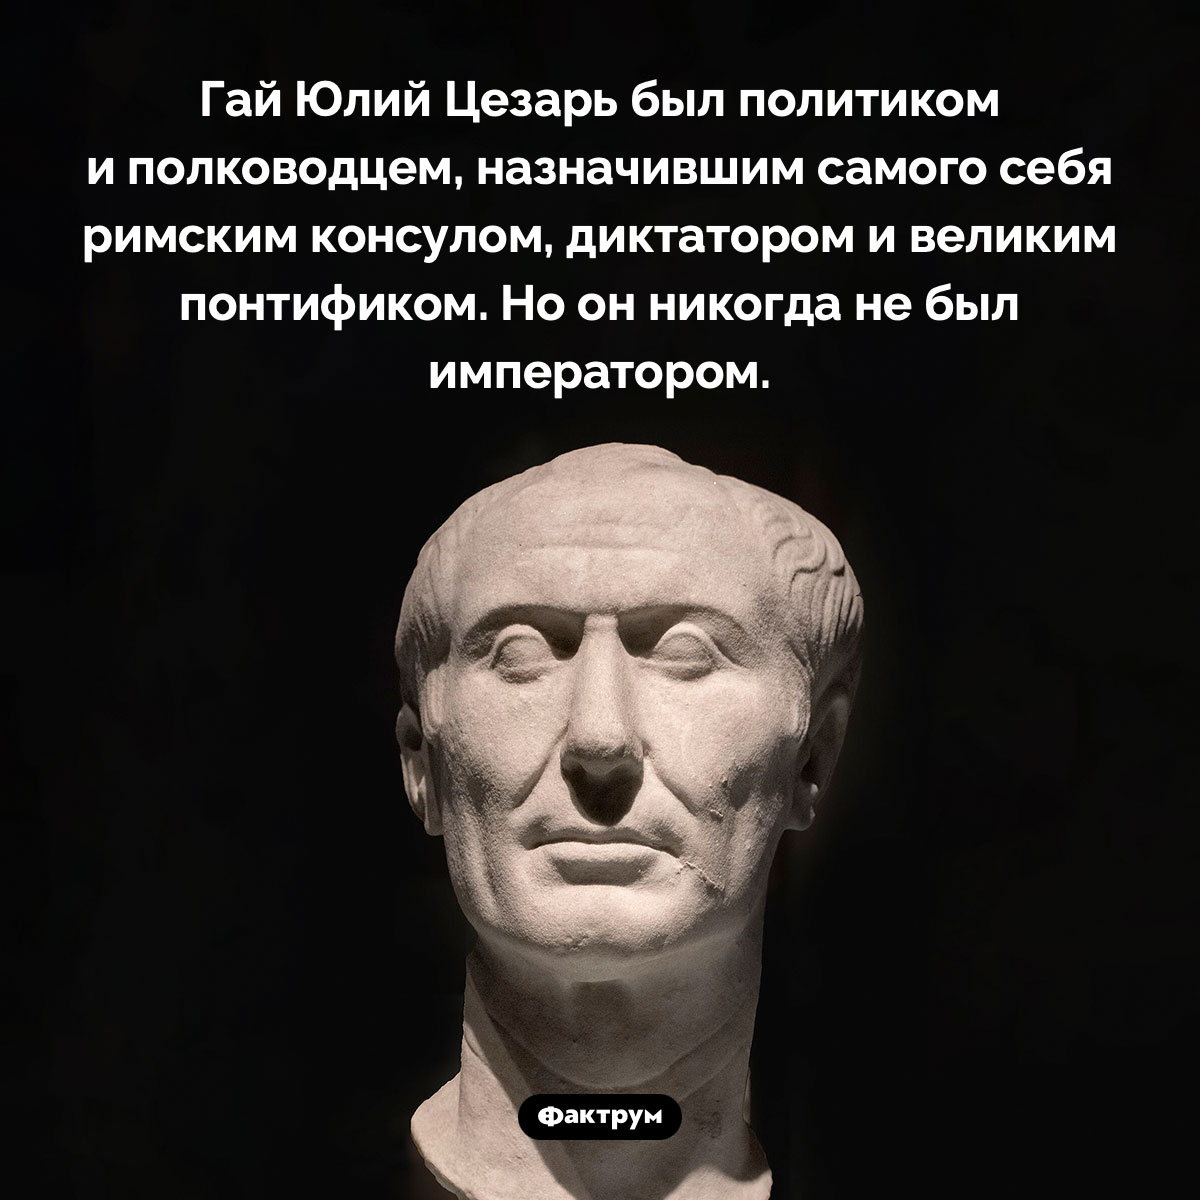 Цезарь не был императором. Гай Юлий Цезарь был политиком и полководцем, назначившим самого себя римским консулом, диктатором и великим понтификом. Но он никогда не был императором.